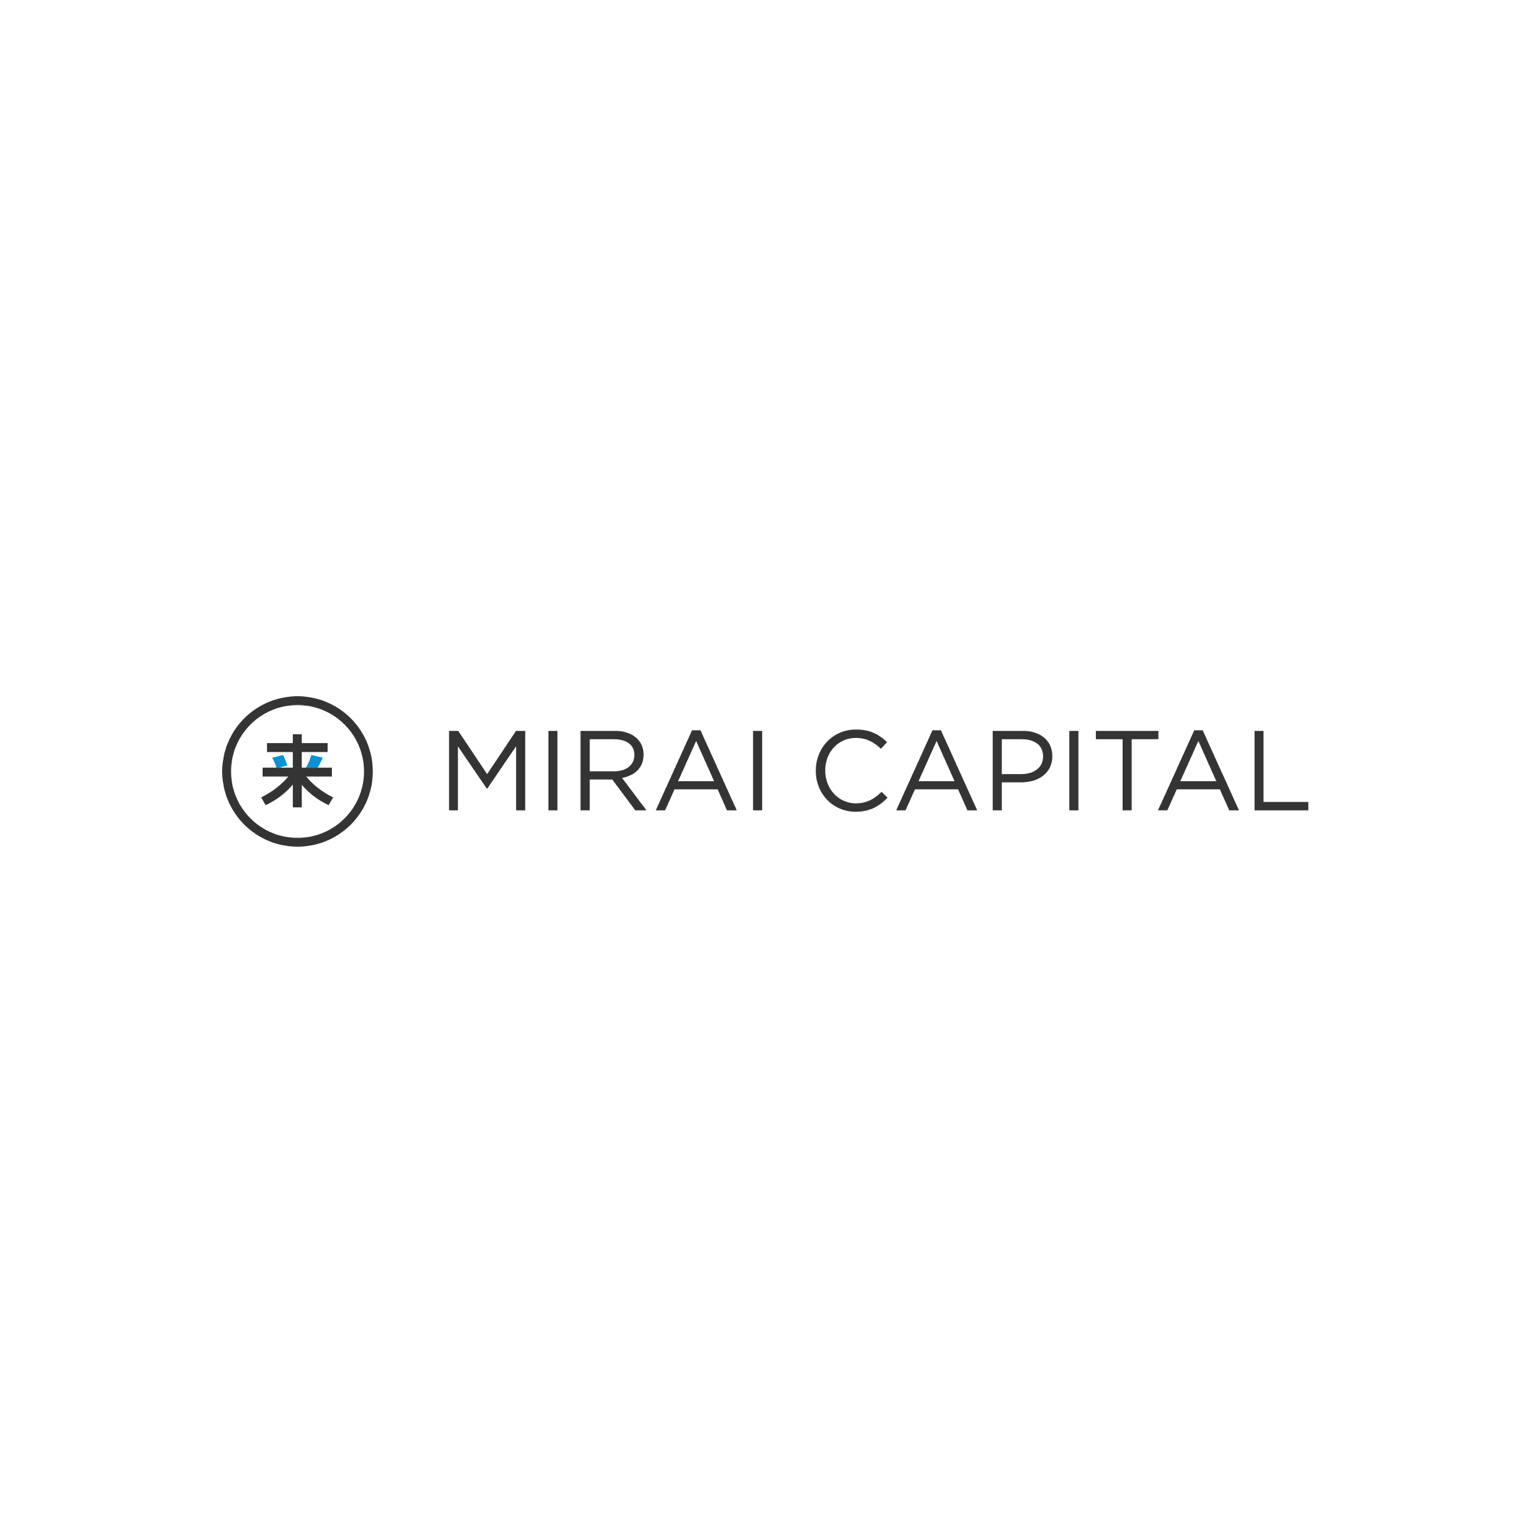 mirai branding visual identity